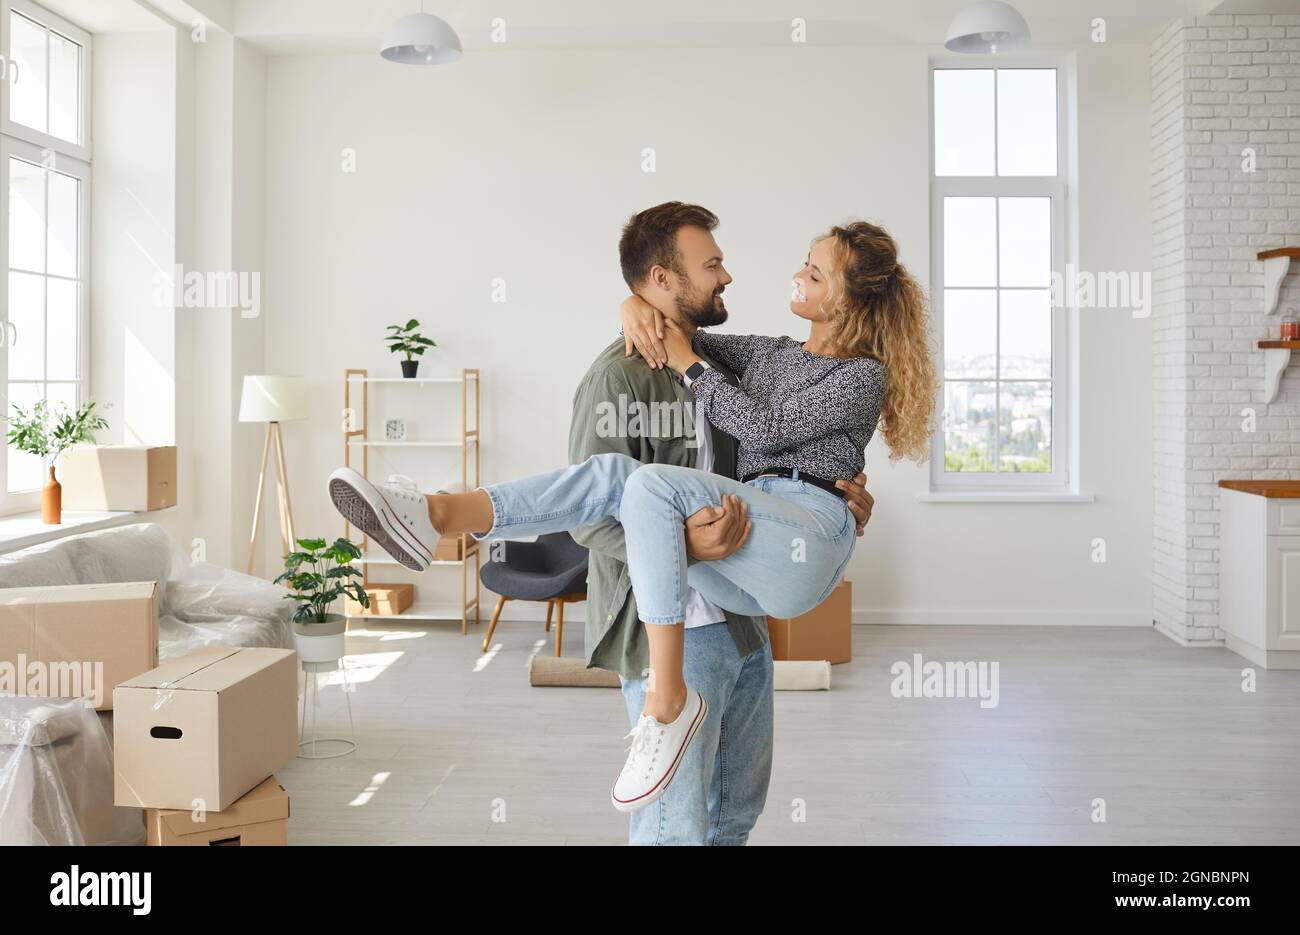 Romantisches Porträt eines fröhlichen und zufriedenen jungen verliebten Paares, das in sein neues Zuhause zieht. Stockfoto